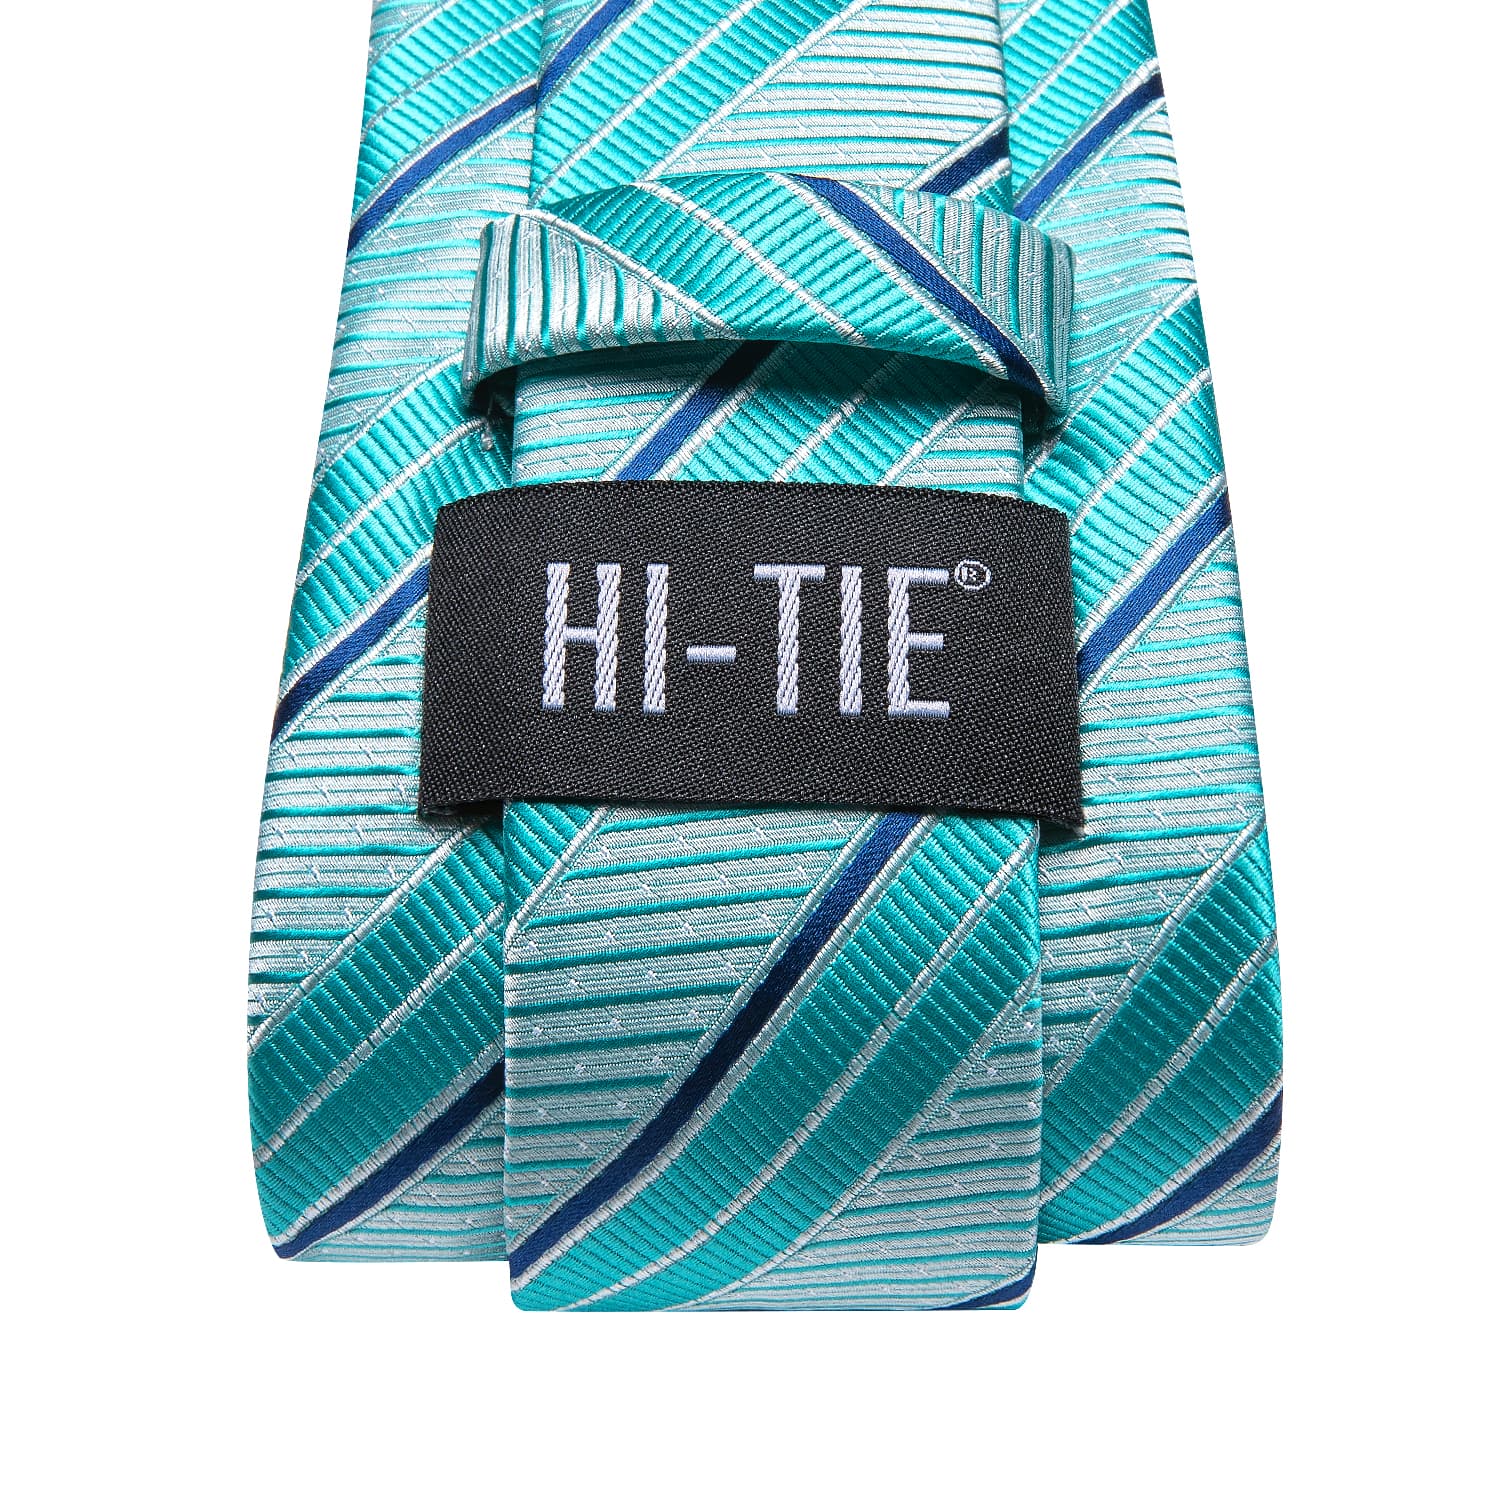 Hi-Tie Striped Tie Cyan Teal Silk Necktie Set for Men